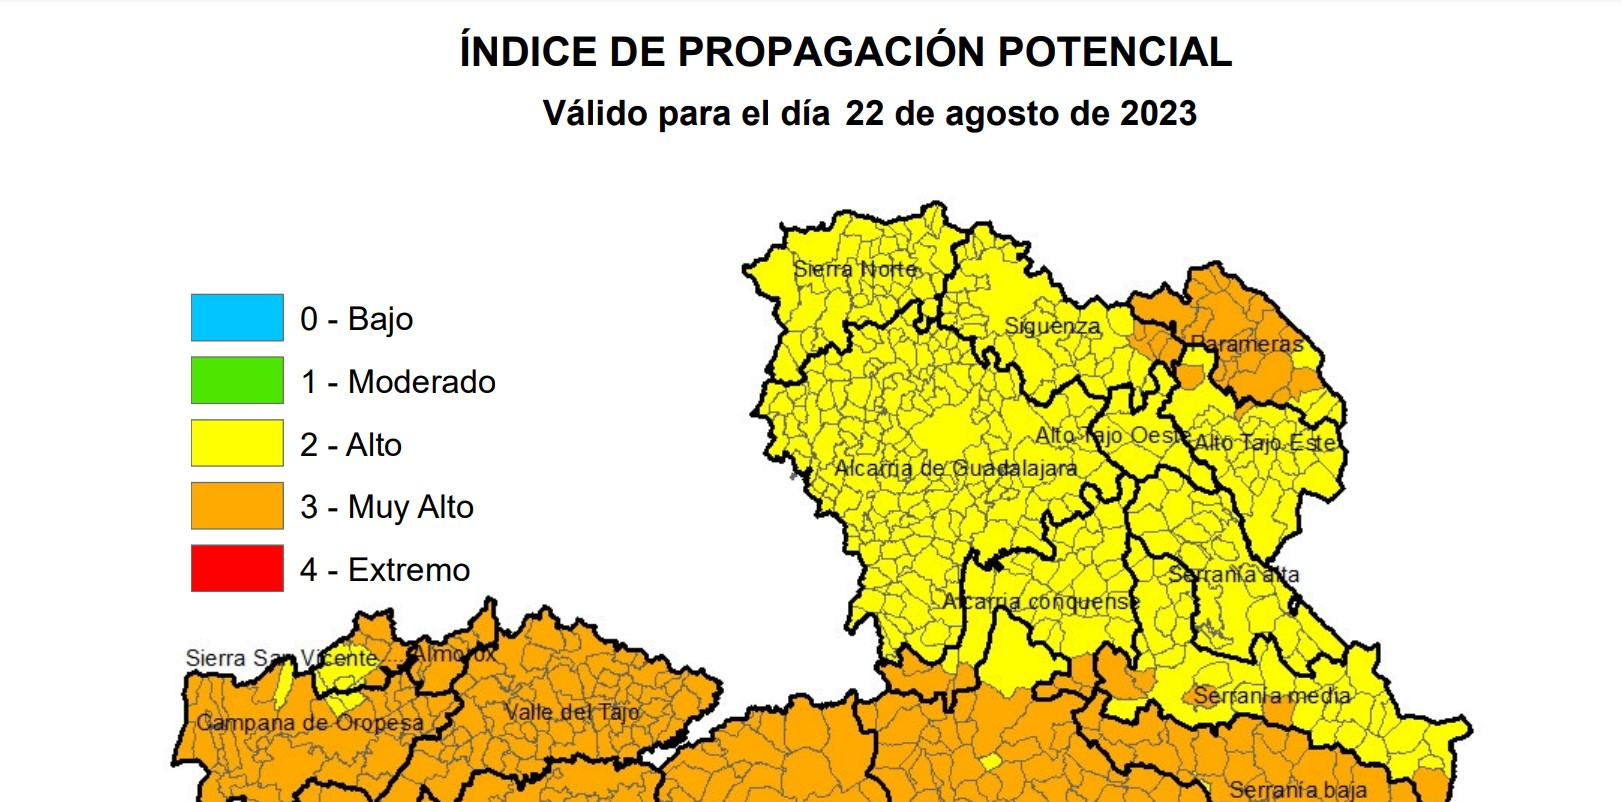 Fuente: Consejería de Desarrollo Sostenible de Castilla-La Mancha.